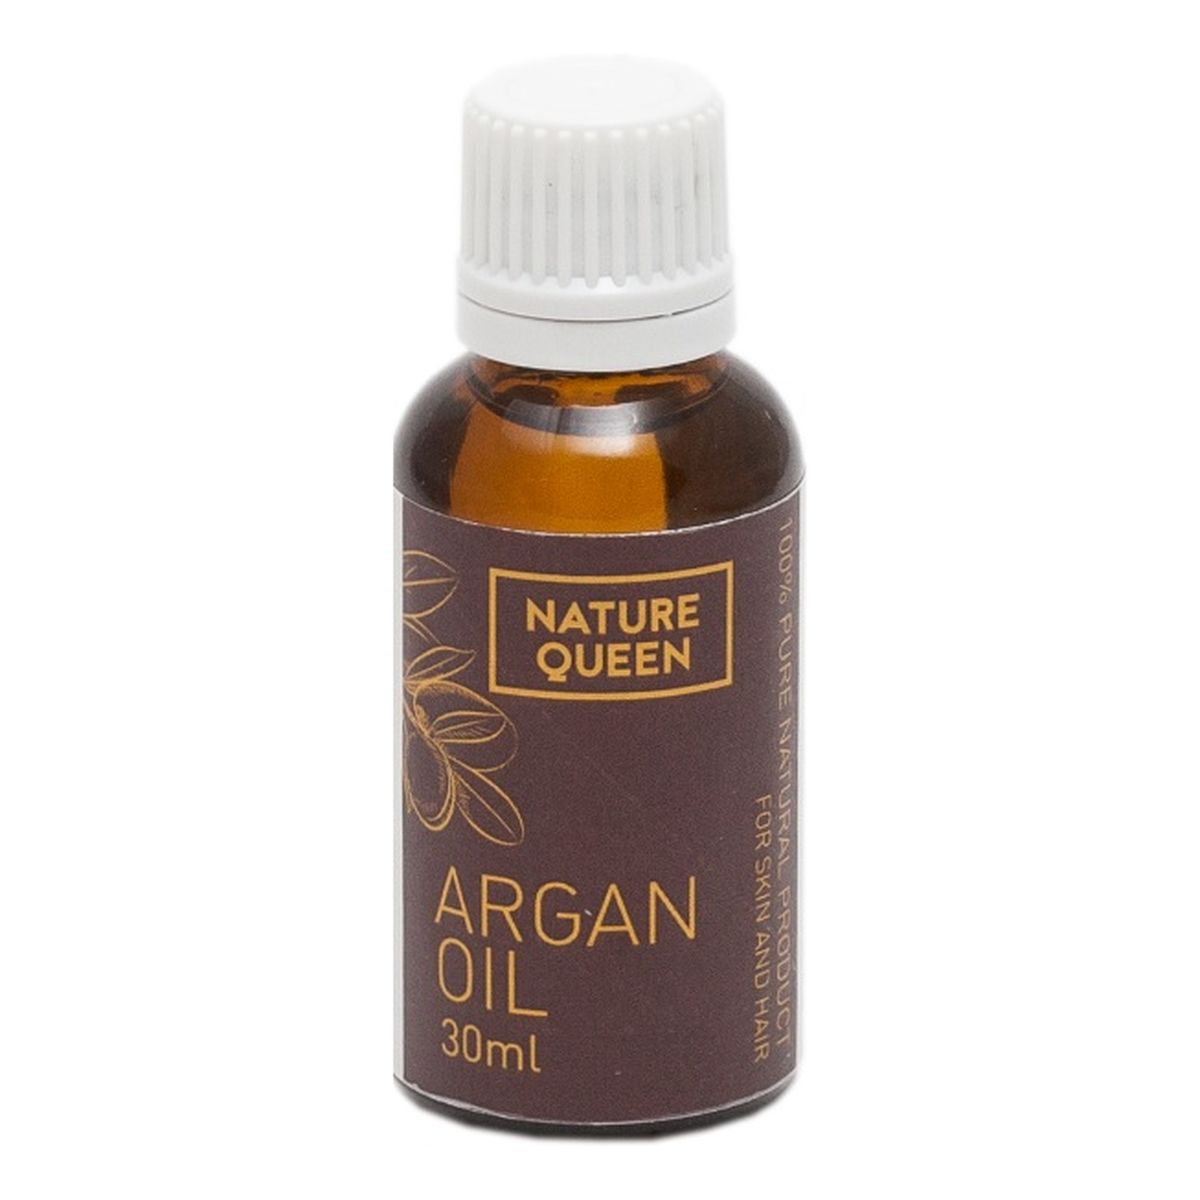 Nature Queen Argan Oil Olejek Arganowy 30ml